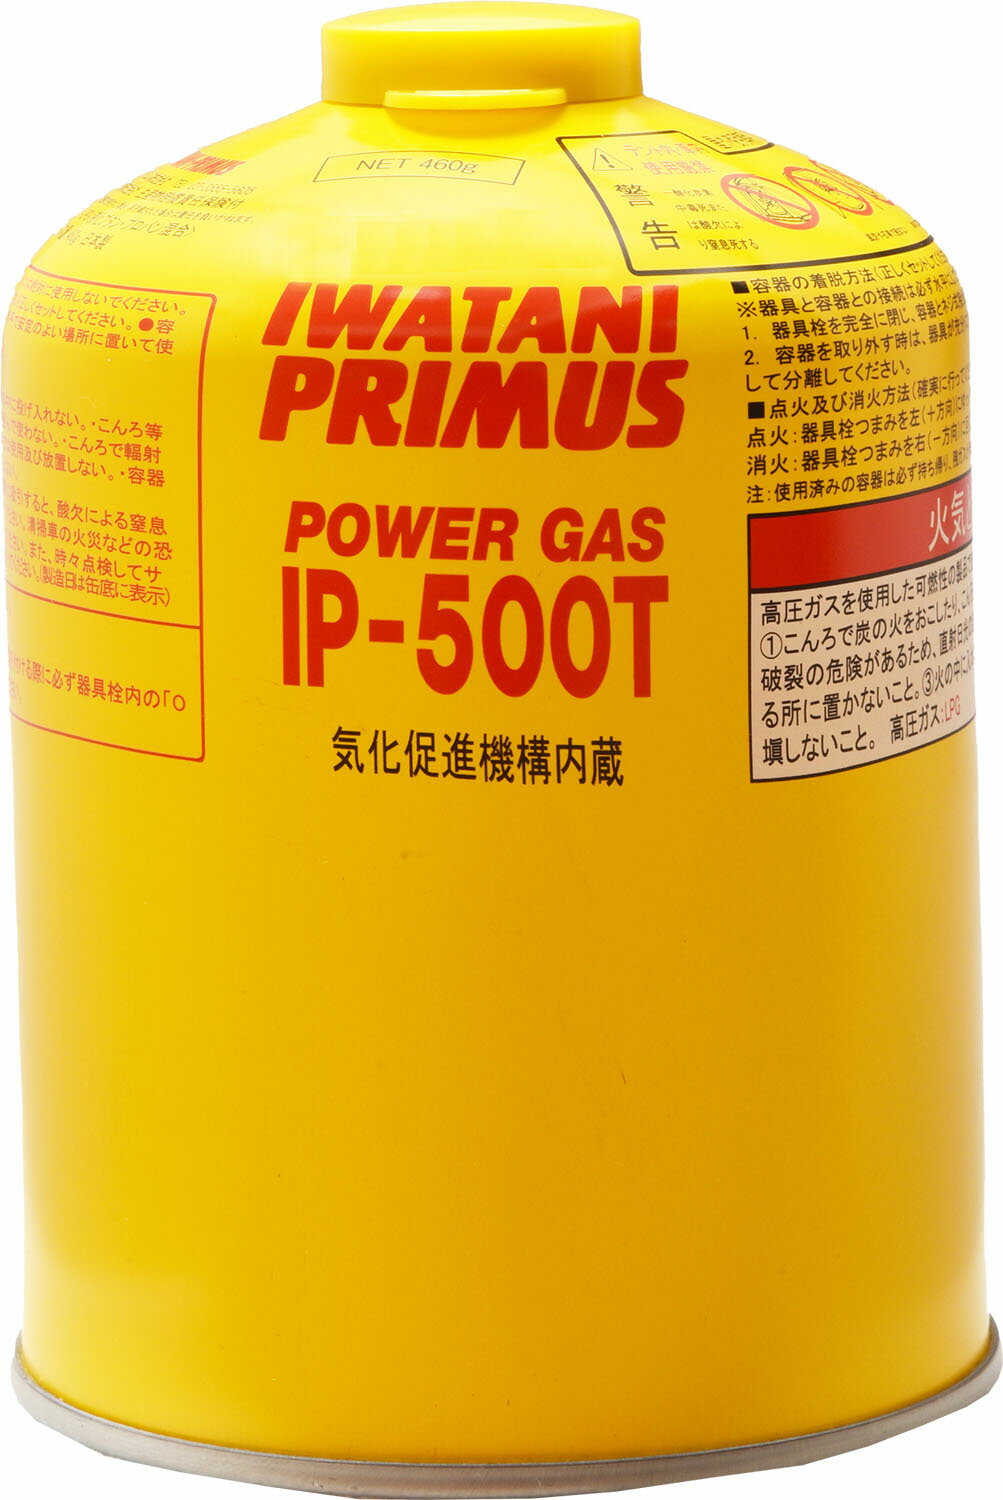  PRIMUS プリムス アウトドア ハイパワーガス 大 ガス缶 ガス コンロ ランタン キャンプ 調理 BBQ オールシーズン IP500T